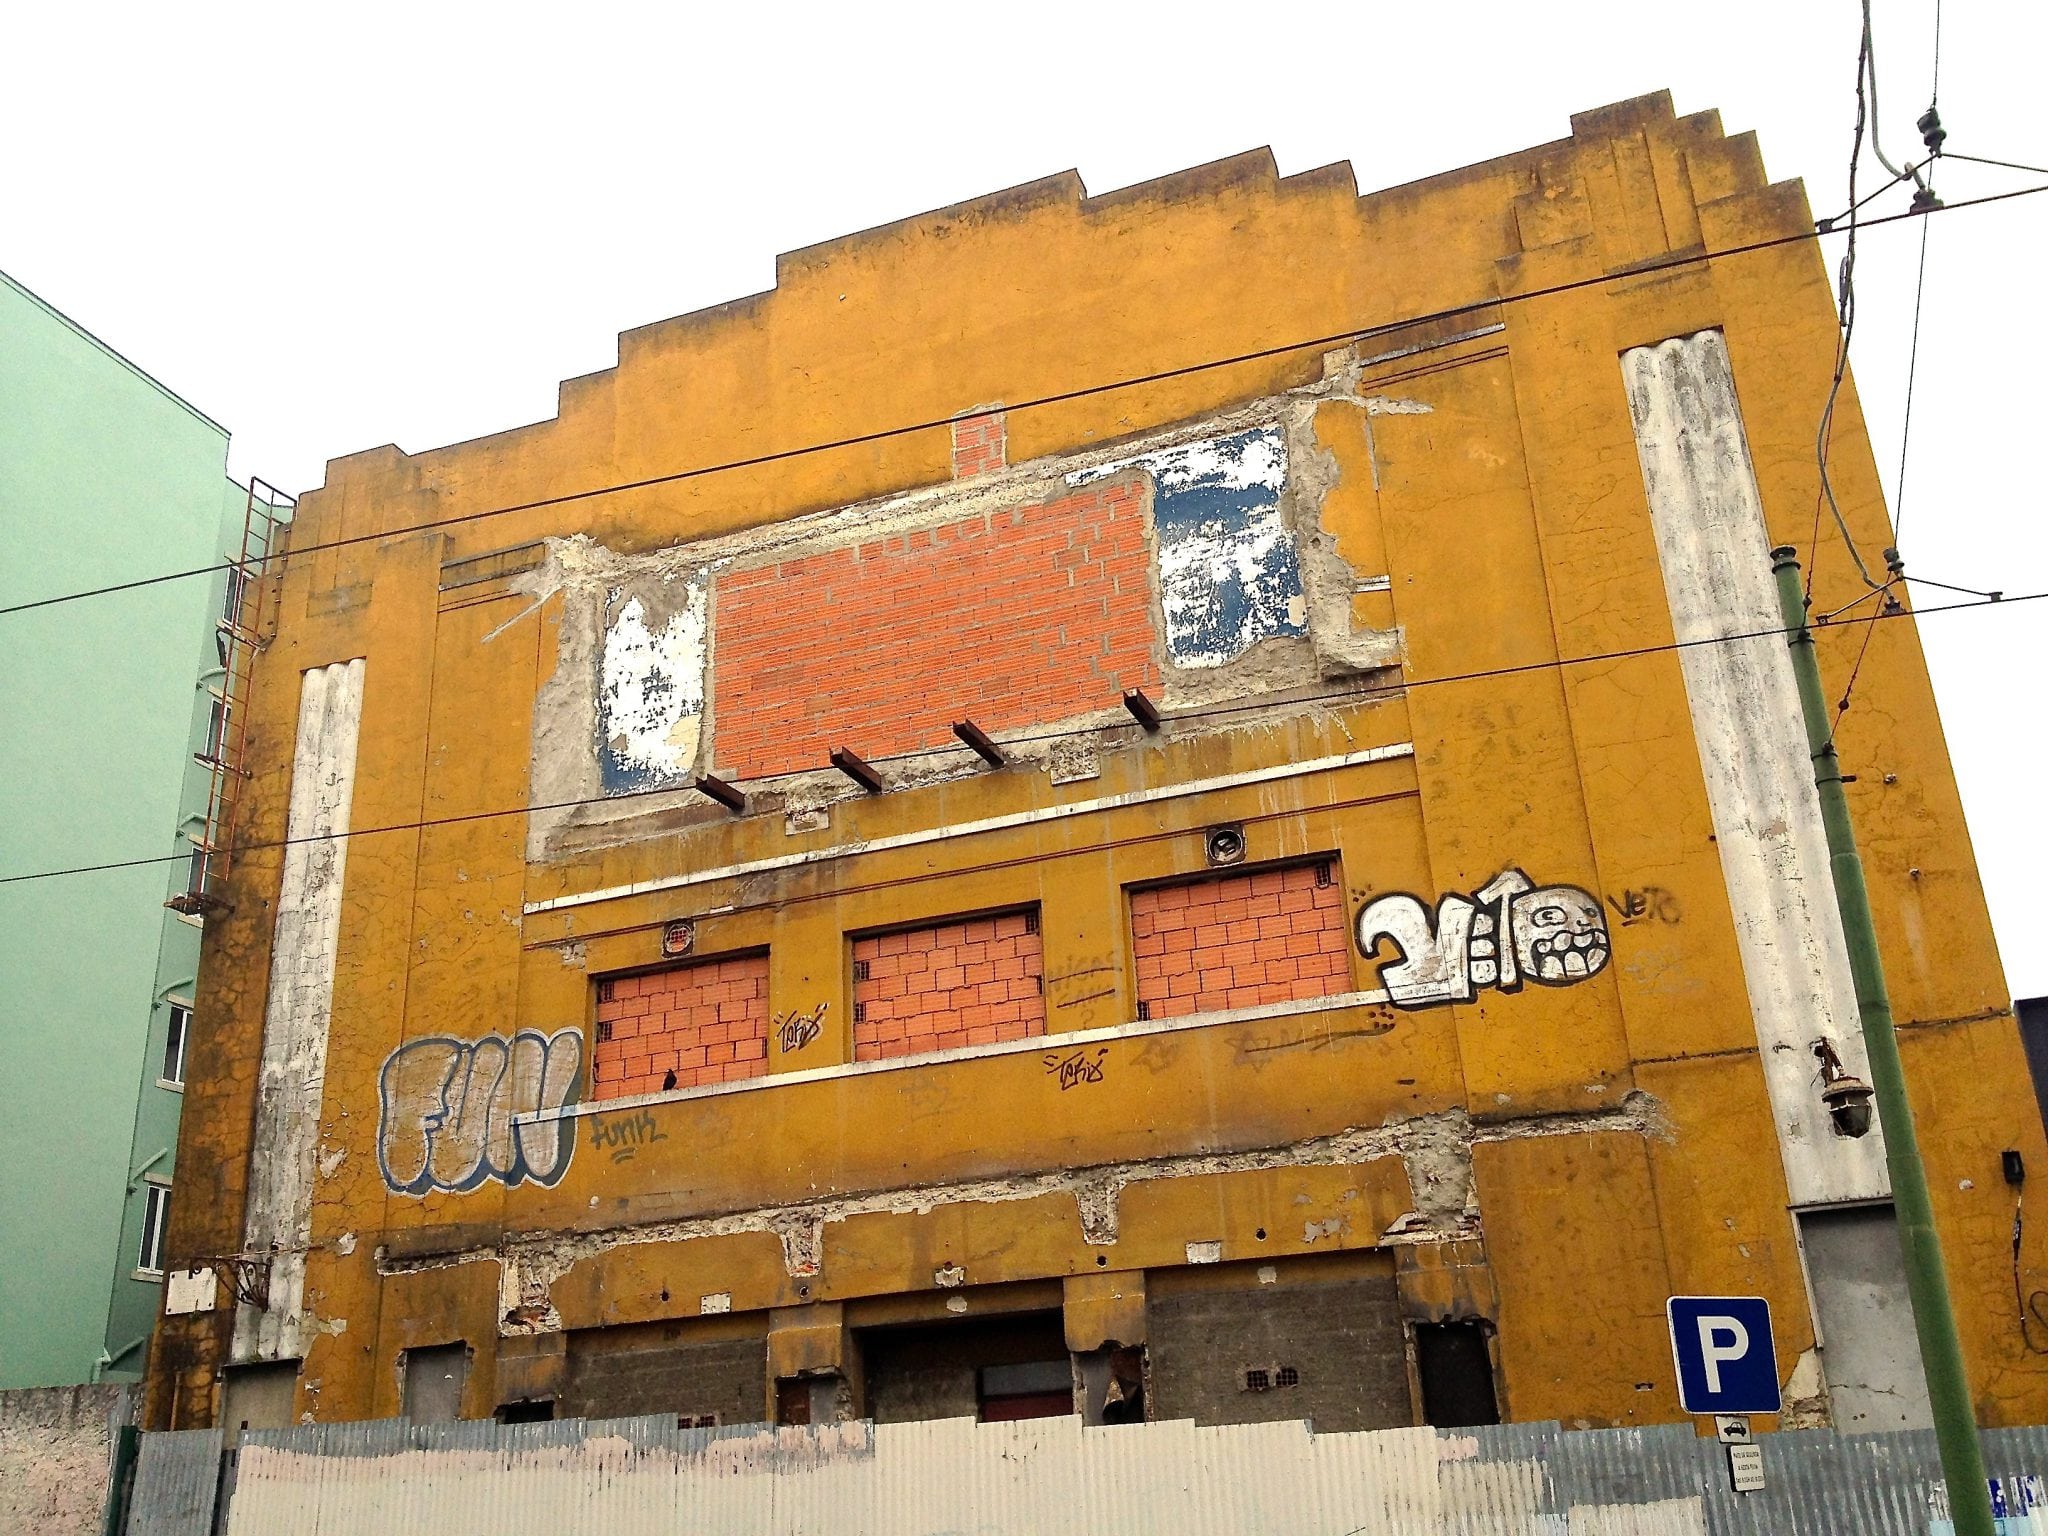 Cidadãos querem salvar da demolição antigo Cinema Paris contra “febre da especulação imobiliária”